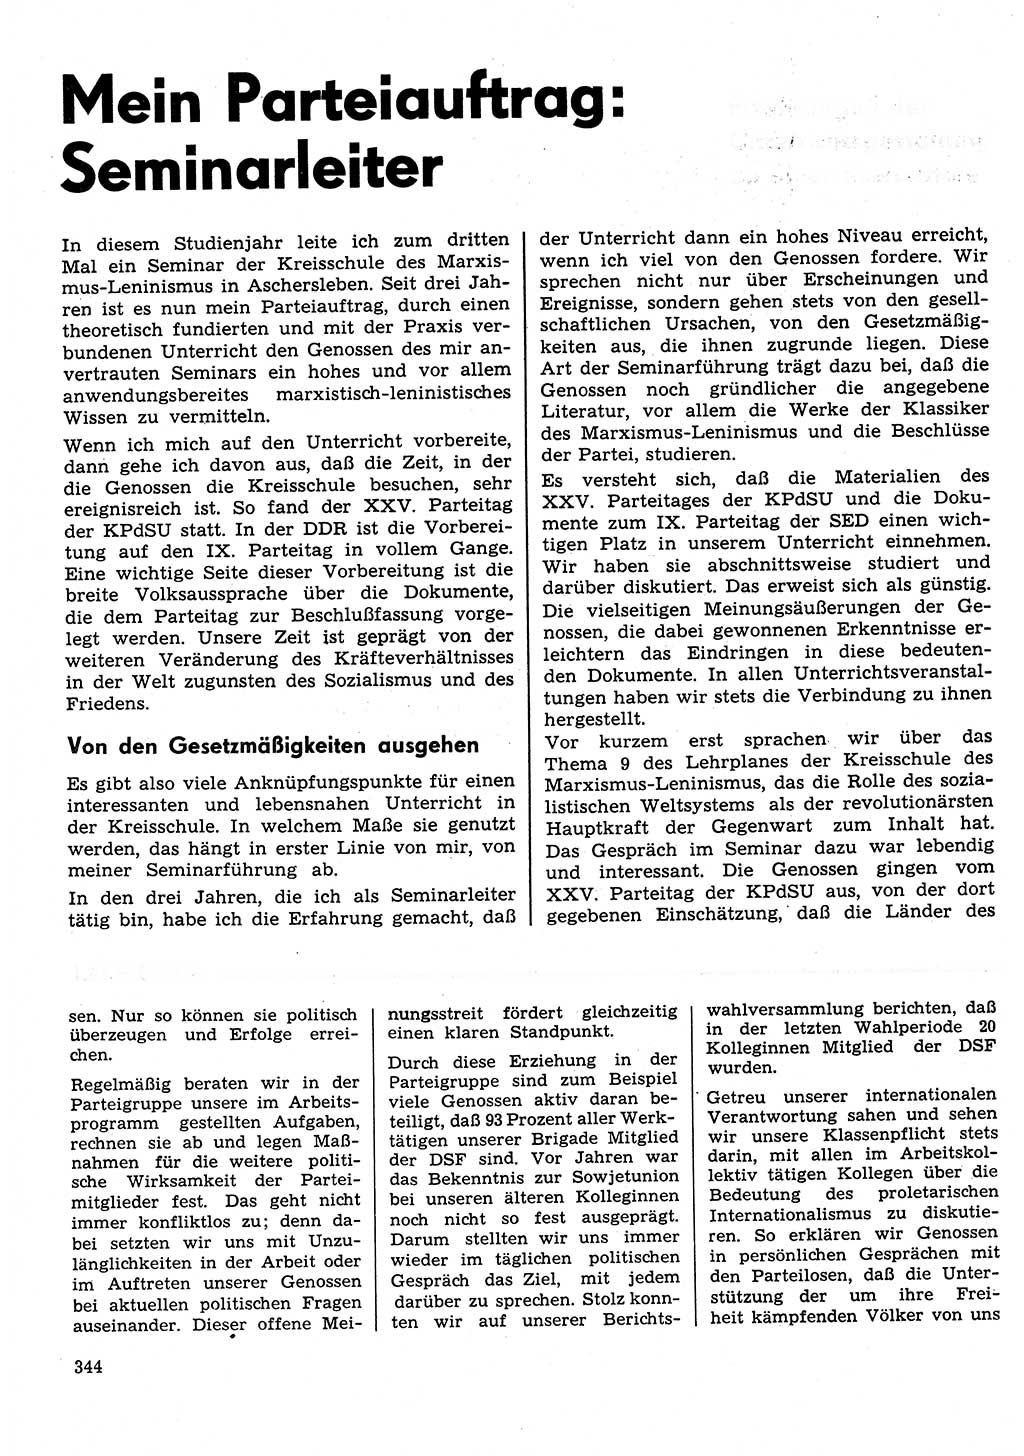 Neuer Weg (NW), Organ des Zentralkomitees (ZK) der SED (Sozialistische Einheitspartei Deutschlands) für Fragen des Parteilebens, 31. Jahrgang [Deutsche Demokratische Republik (DDR)] 1976, Seite 344 (NW ZK SED DDR 1976, S. 344)